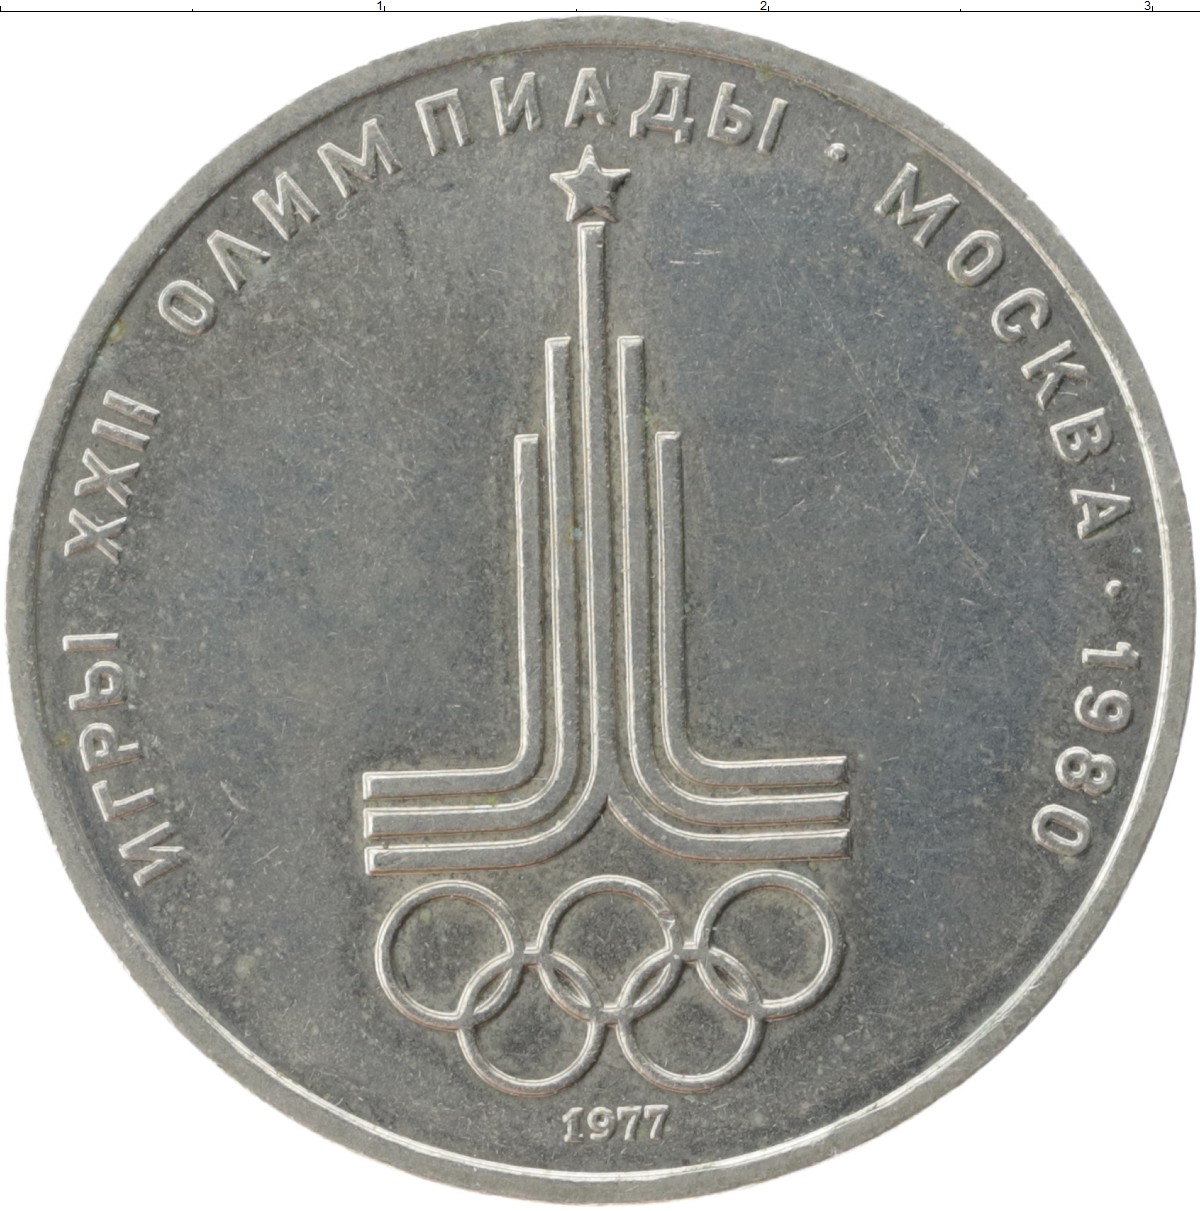 1 рубль 80 года. 1 Рубль СССР 1980 год игры олимпиады Москва. Монета СССР 1 рубль 1980 года Олимпийский.